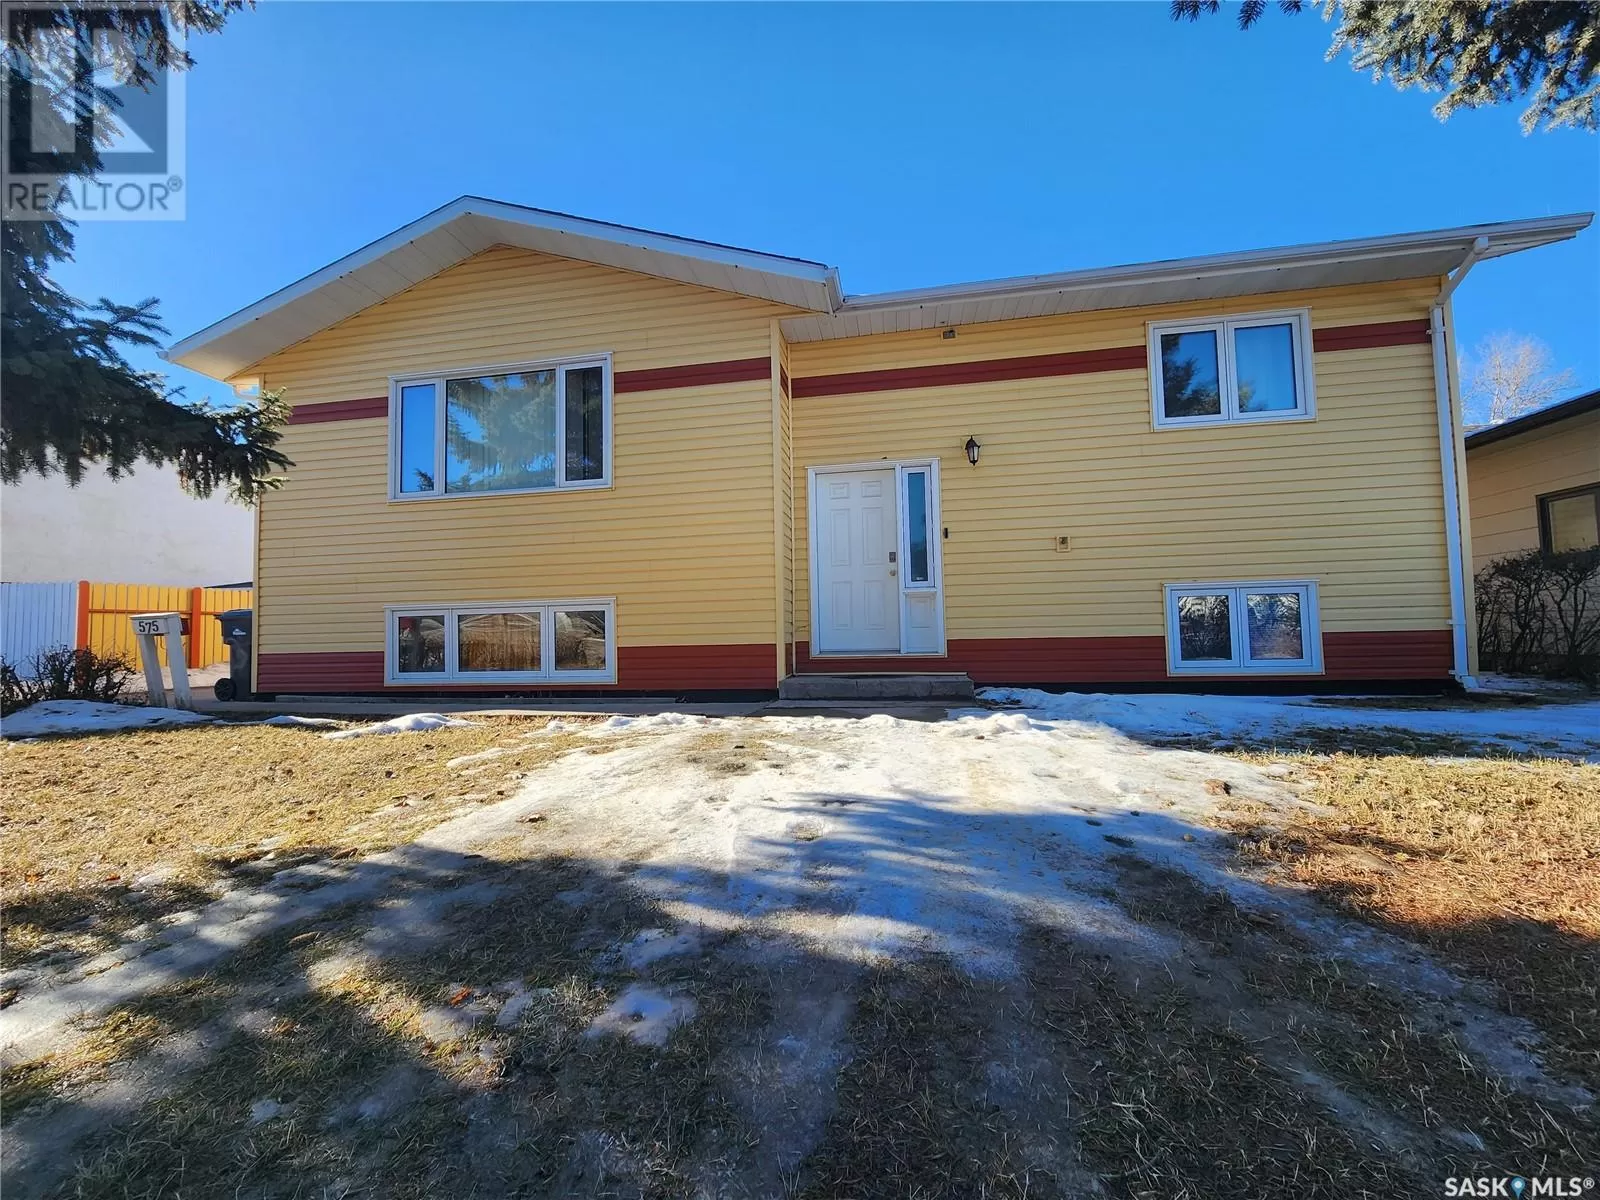 House for rent: 575 13th Street, Weyburn, Saskatchewan S4H 2Y4